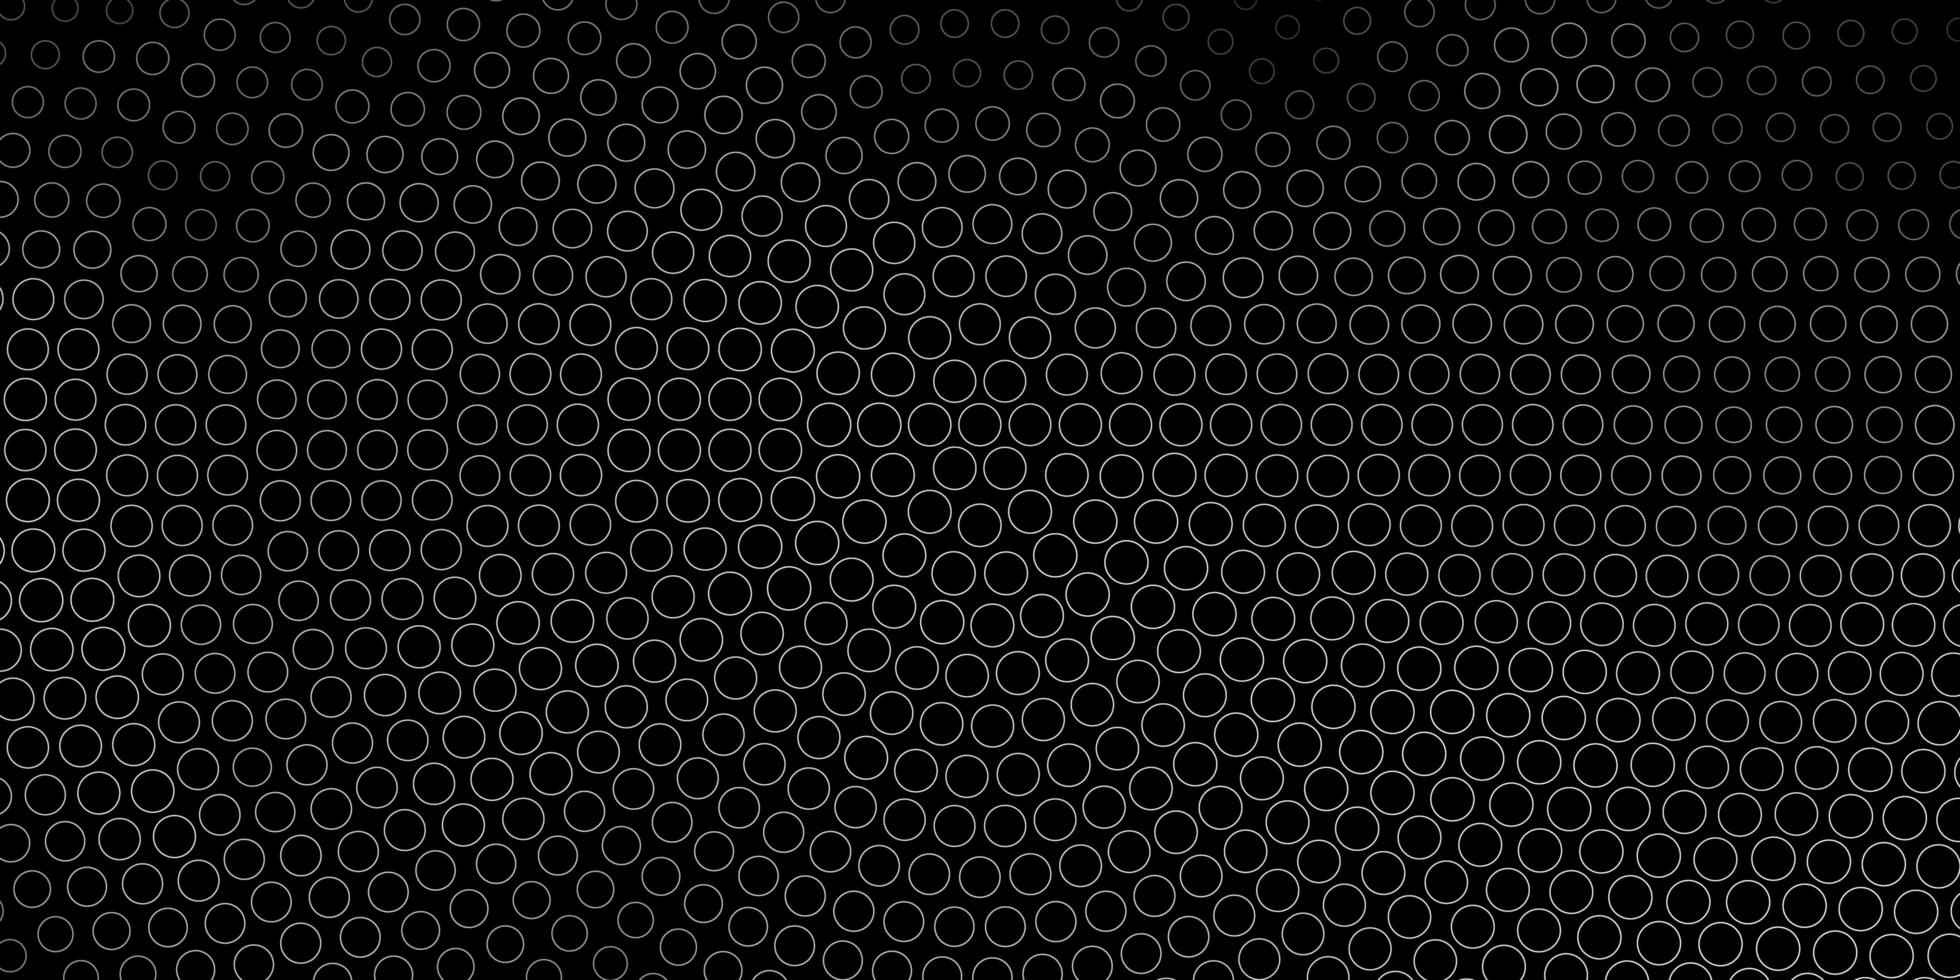 mörkgrå vektor bakgrund med prickar